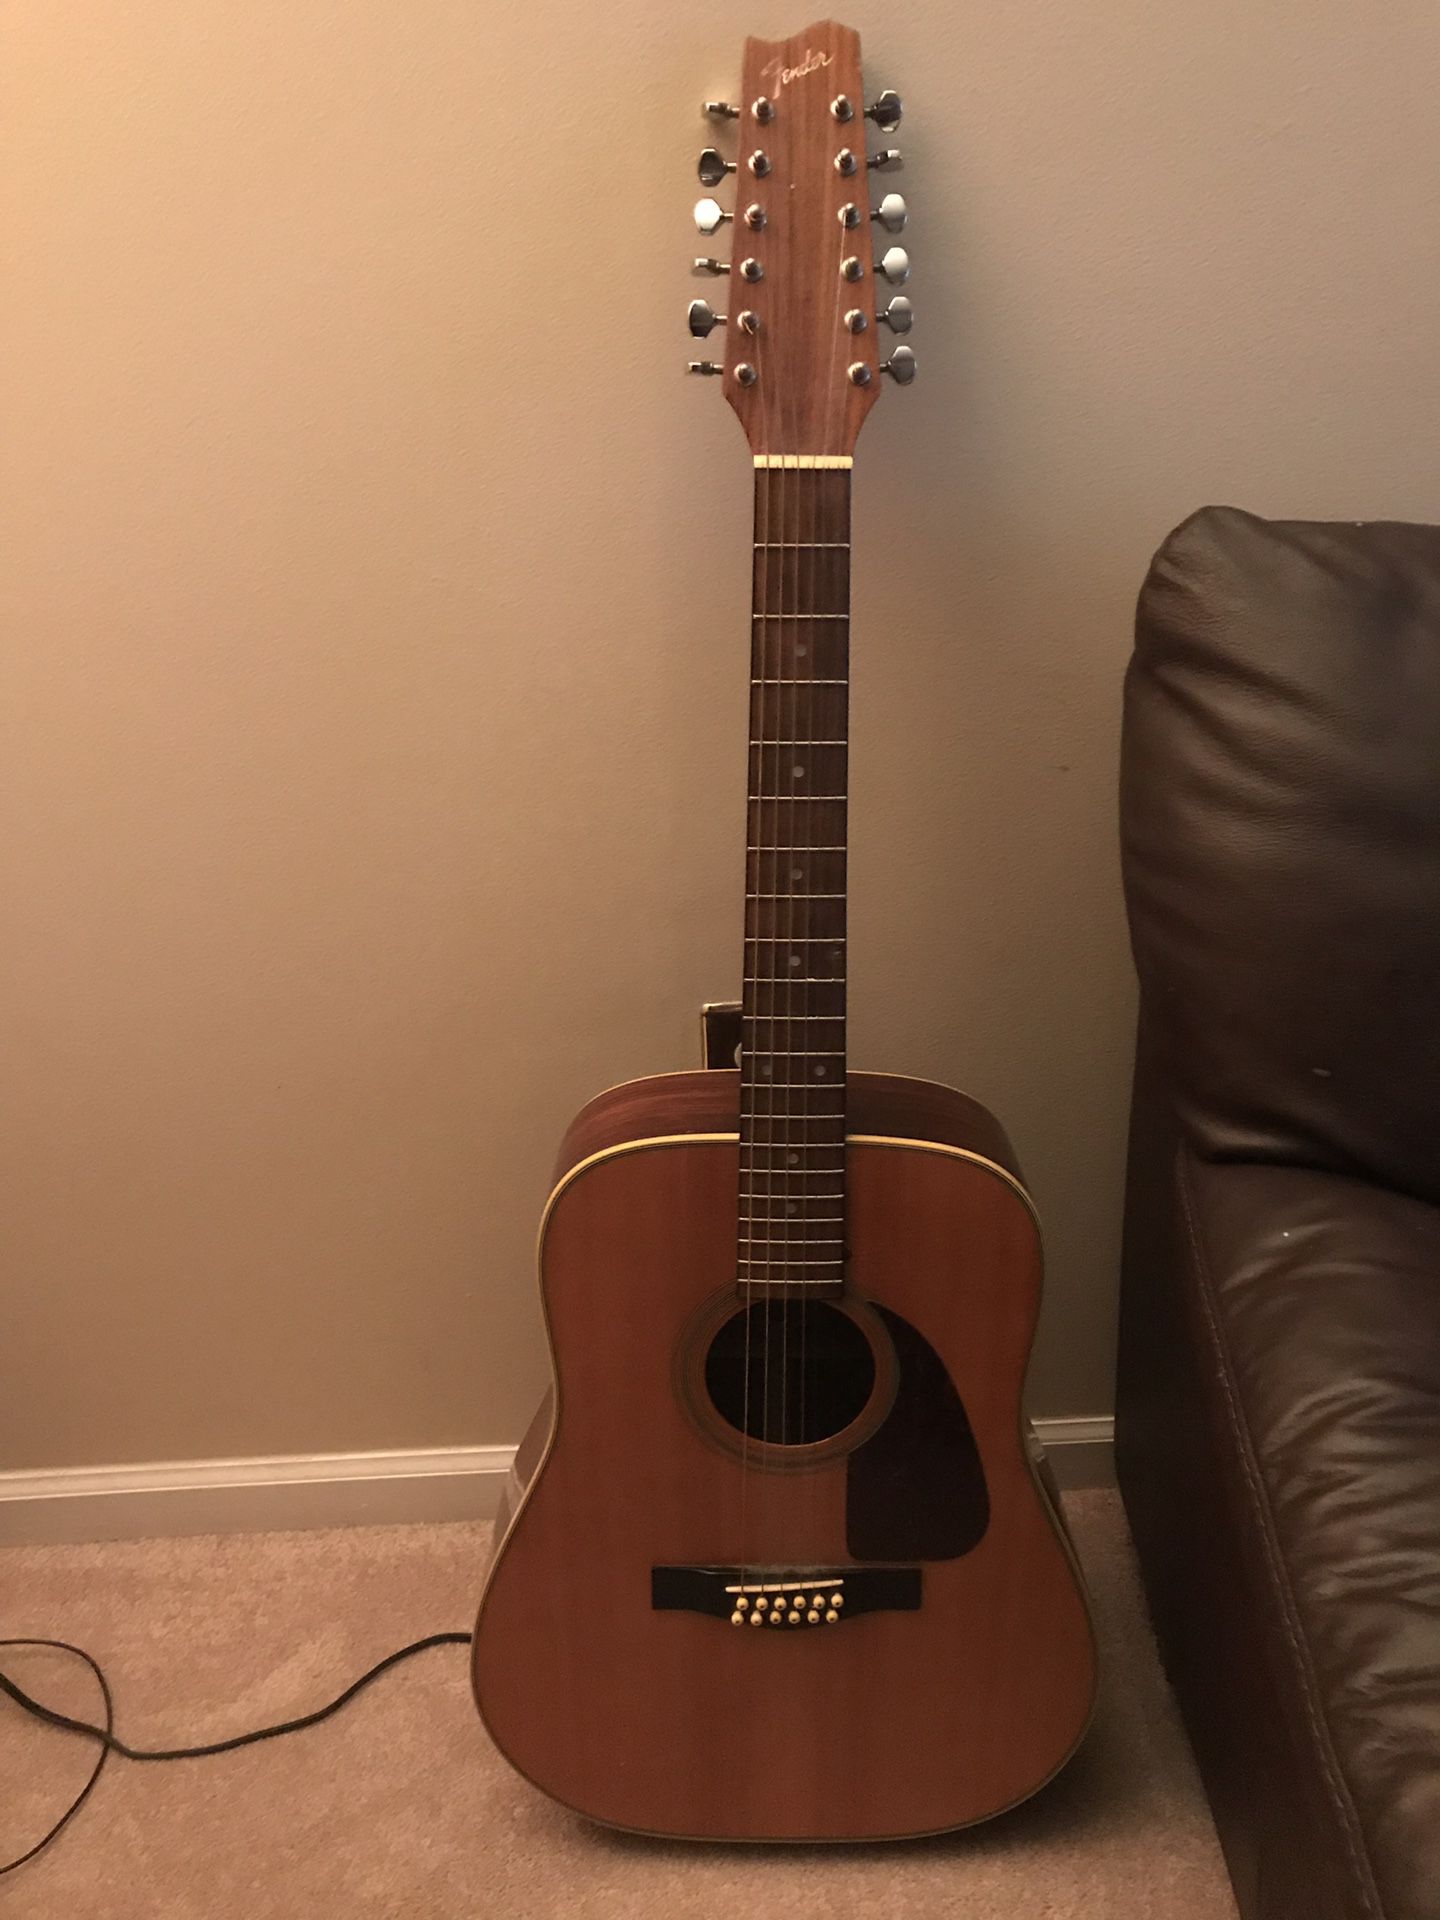 Fender 12 string acoustic guitar